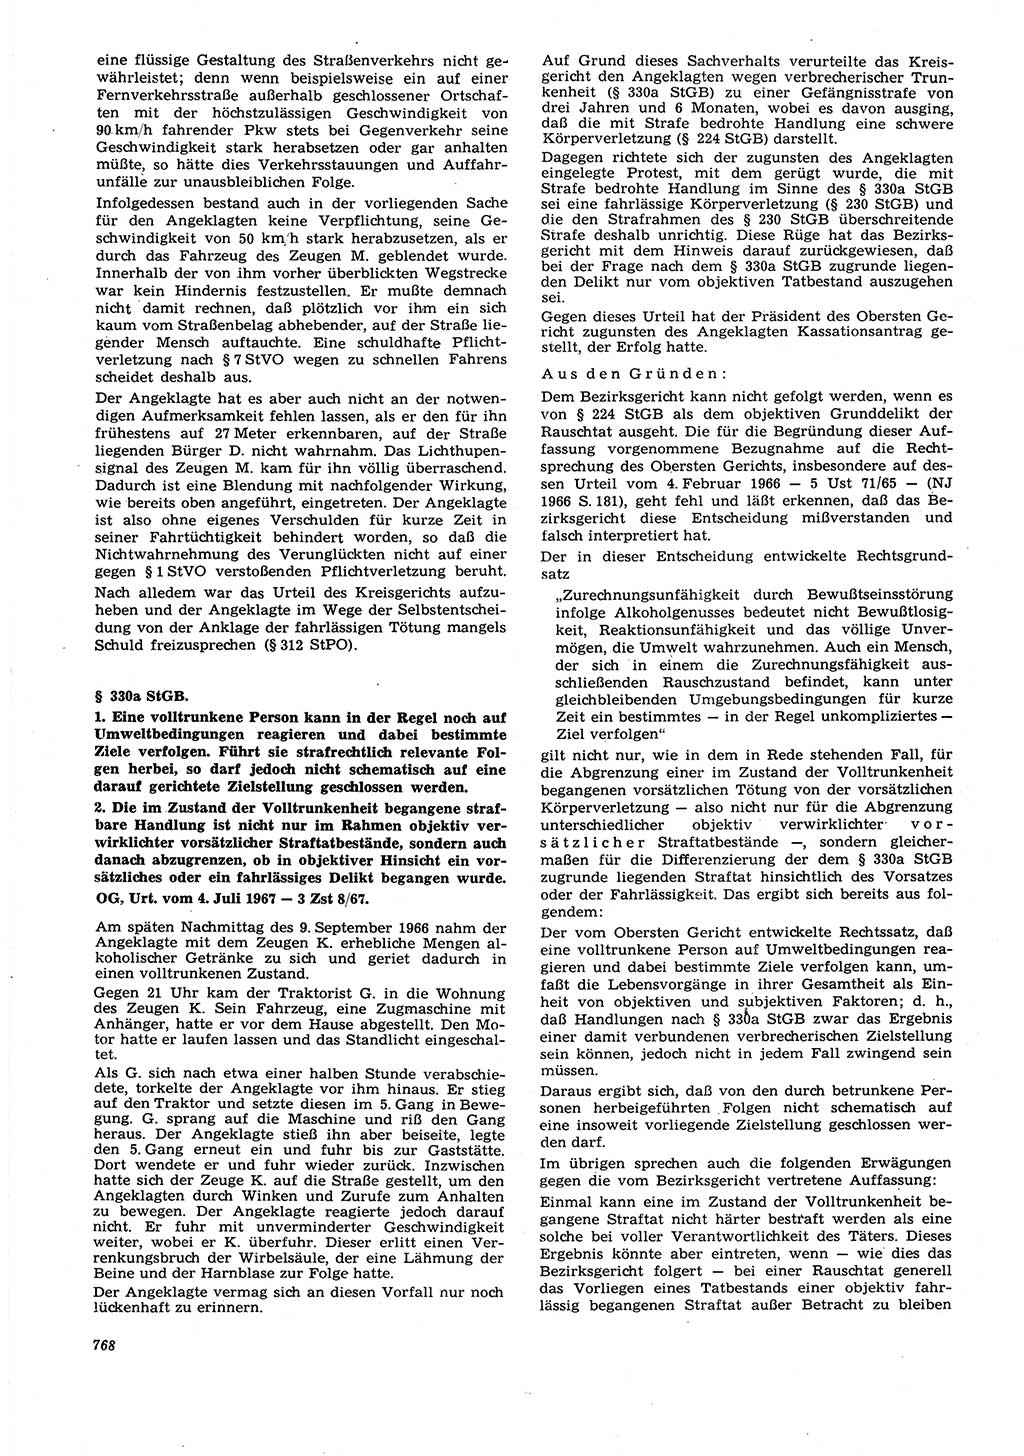 Neue Justiz (NJ), Zeitschrift für Recht und Rechtswissenschaft [Deutsche Demokratische Republik (DDR)], 21. Jahrgang 1967, Seite 768 (NJ DDR 1967, S. 768)